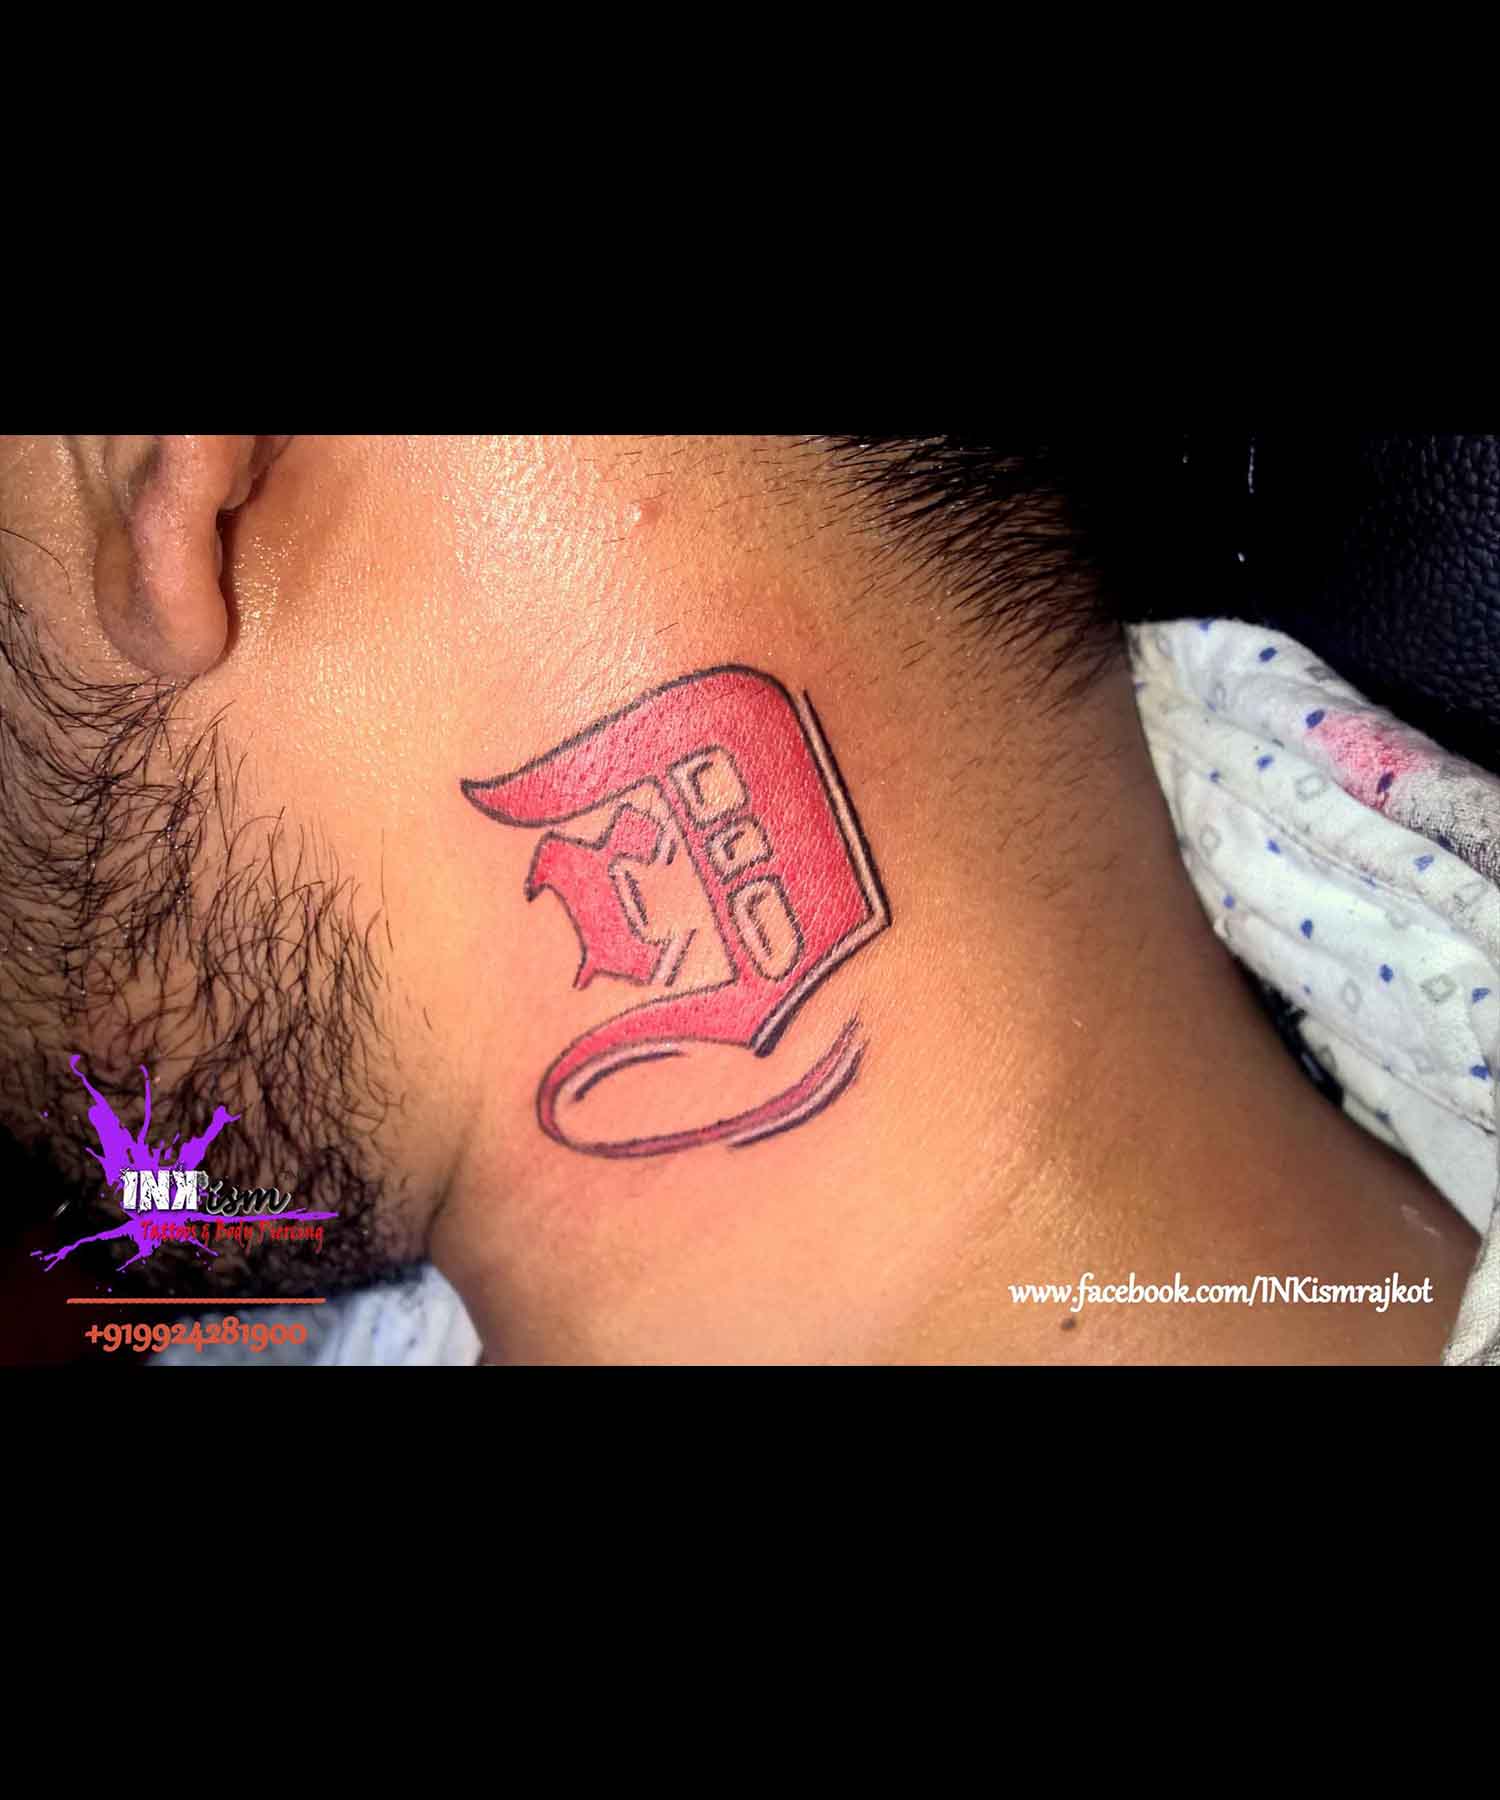 Name initials tattoo, Alphabet tattoo, Inkism tattoo and body piercing rajkot gujarat